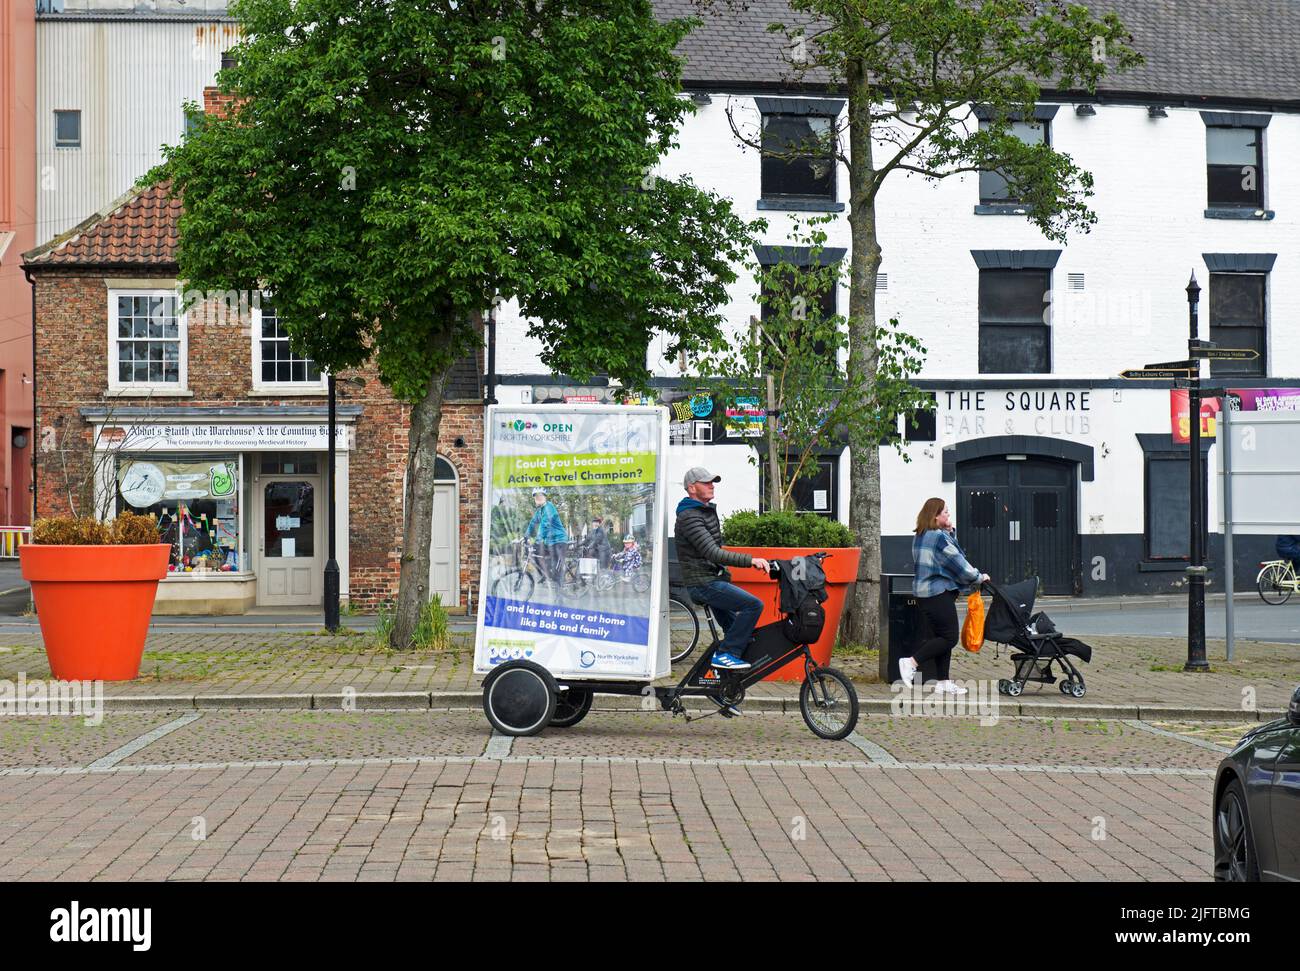 Mann, der Fahrrad fährt, mit Schild, das die Vorteile des Fahrradfahrens fördert, Selby, North Yorkshire, England, Großbritannien Stockfoto